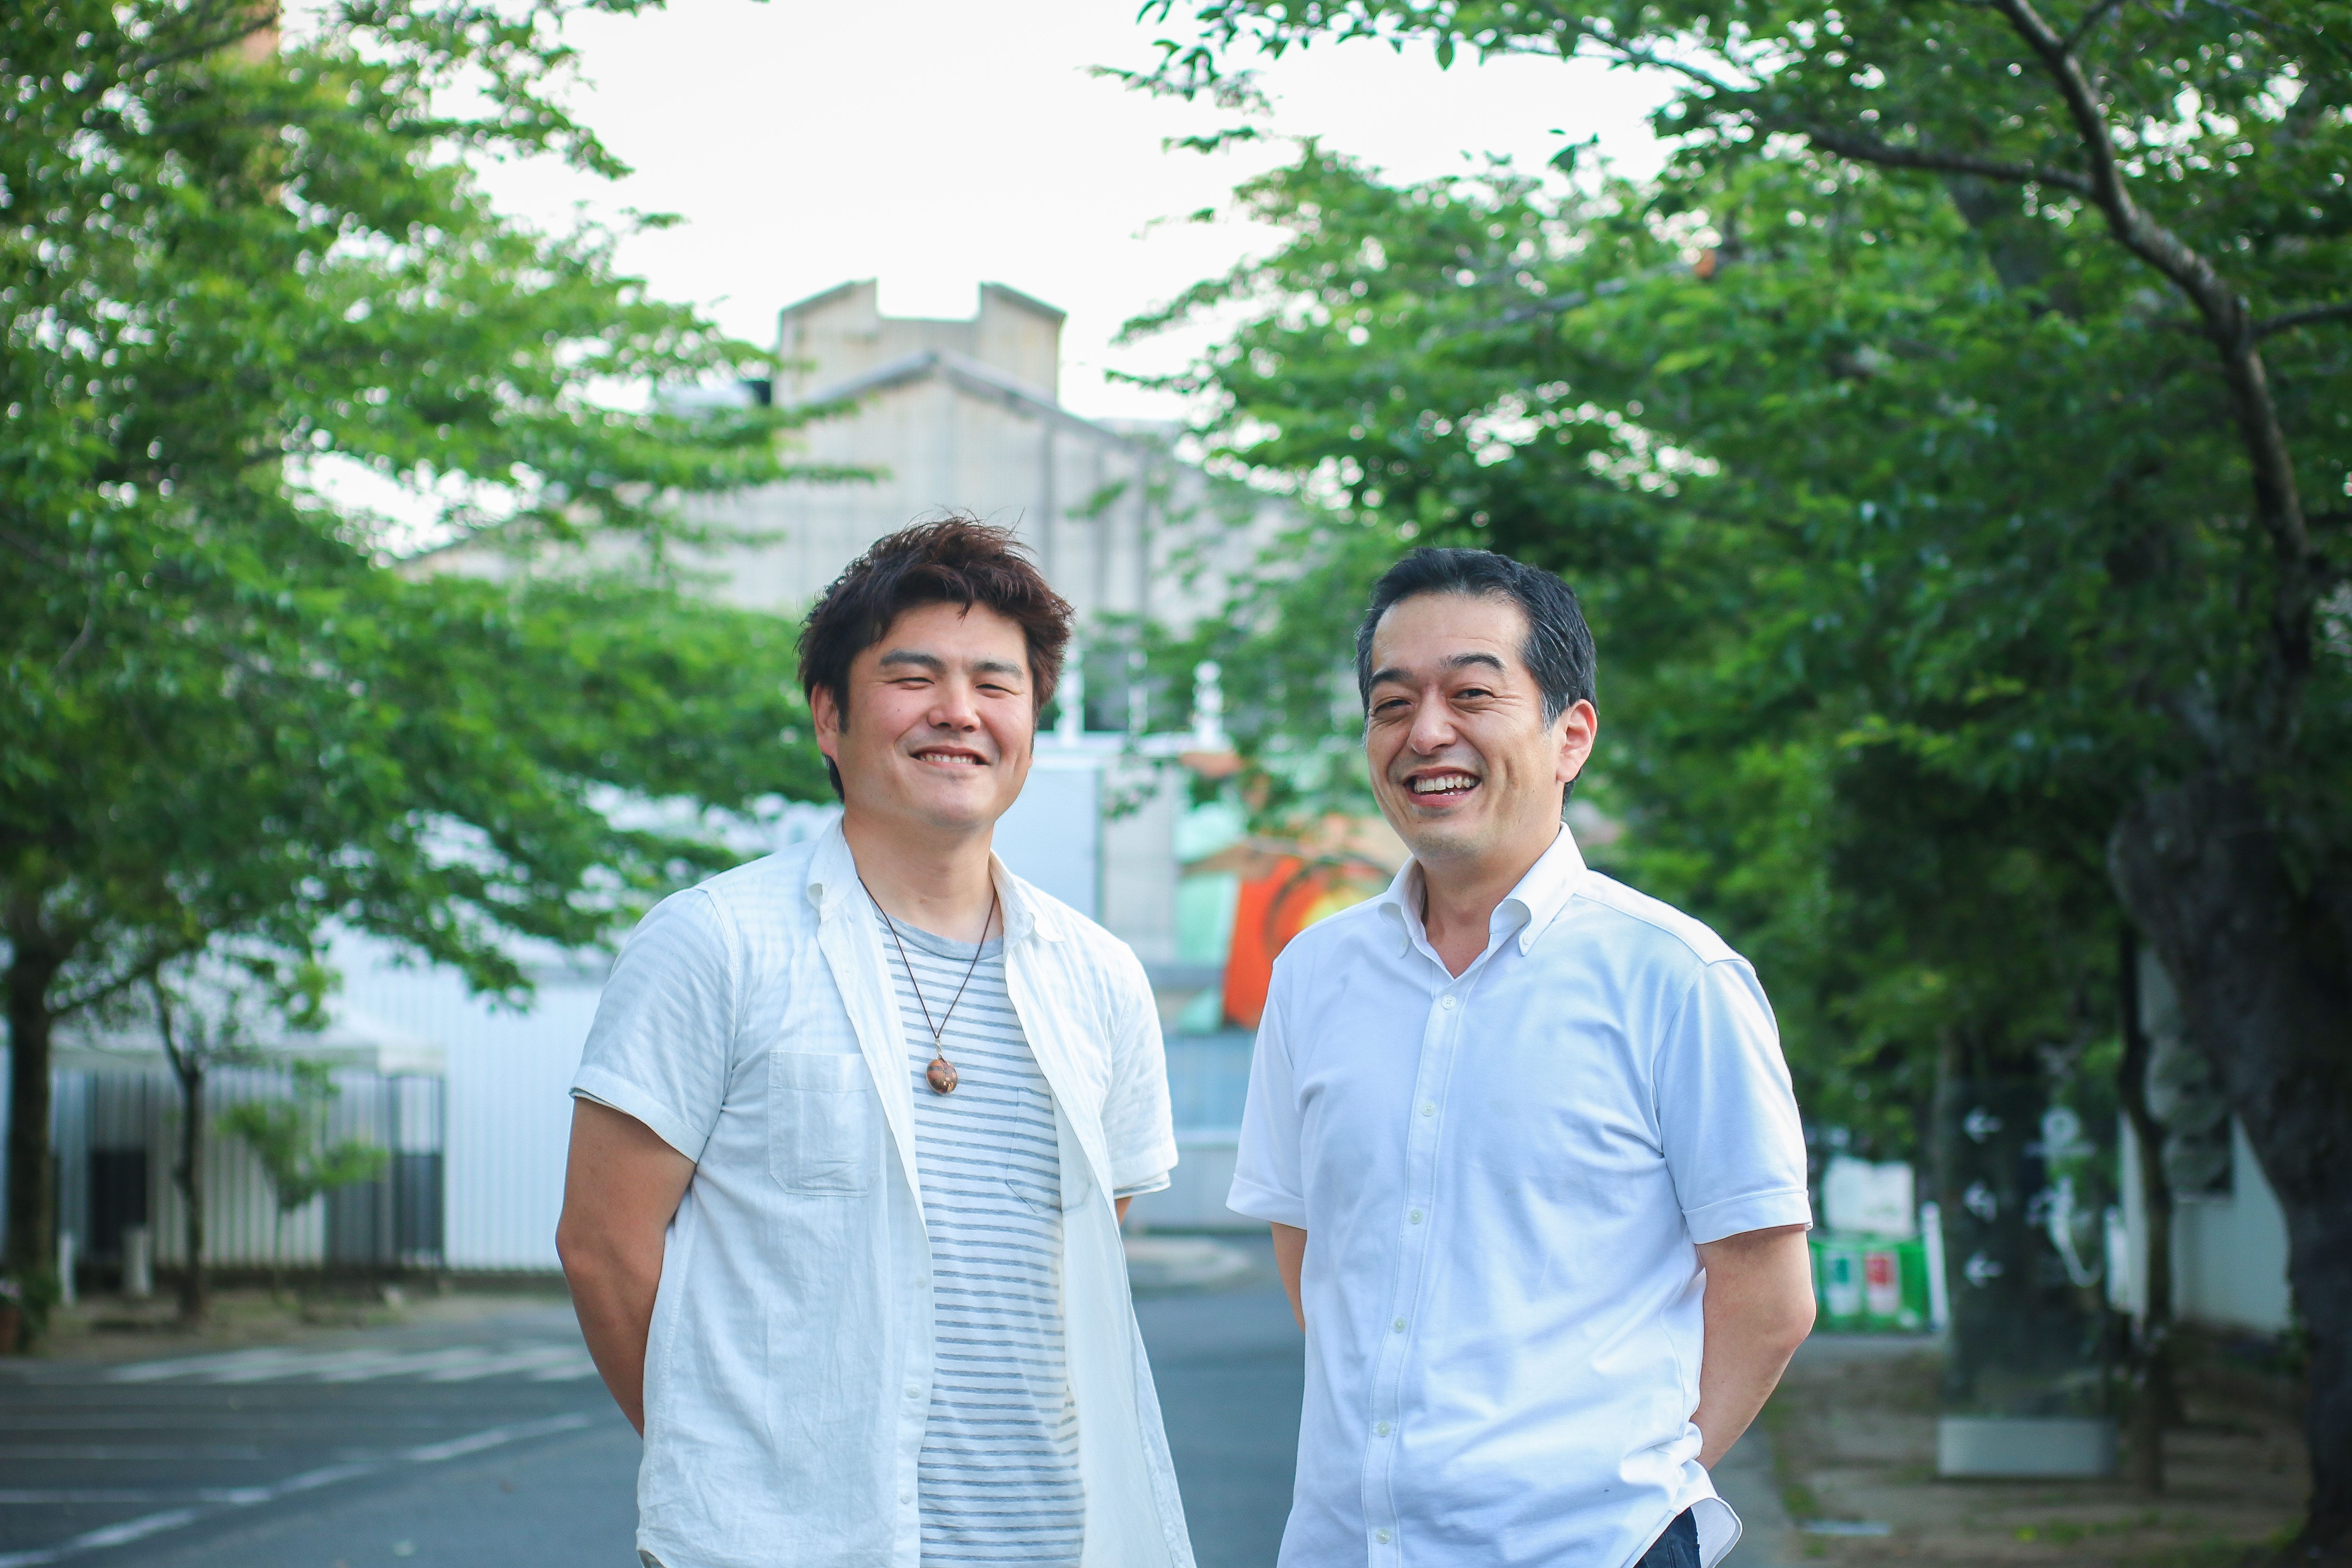 写真右、「菅原工芸硝子」の社長・菅原裕輔さん、左はくらしずく実行委員の阿部純さん。